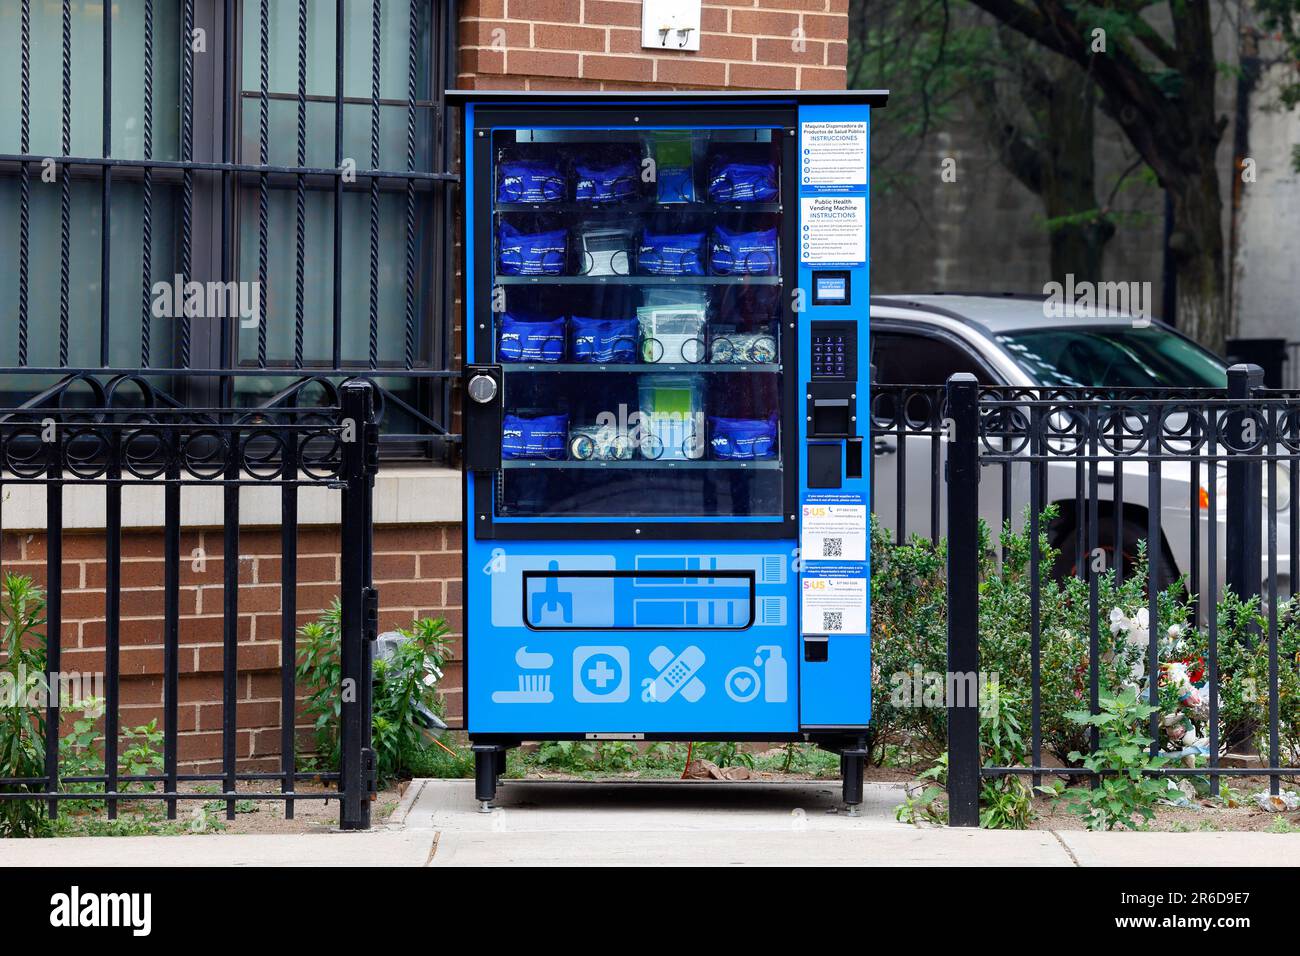 Un distributeur automatique de santé publique de NYC distribuant des kits de sauvetage par surdose d'opioïdes contenant du naloxone spray nasal, des bandelettes de test pour fentanyl et Xylazine. Banque D'Images